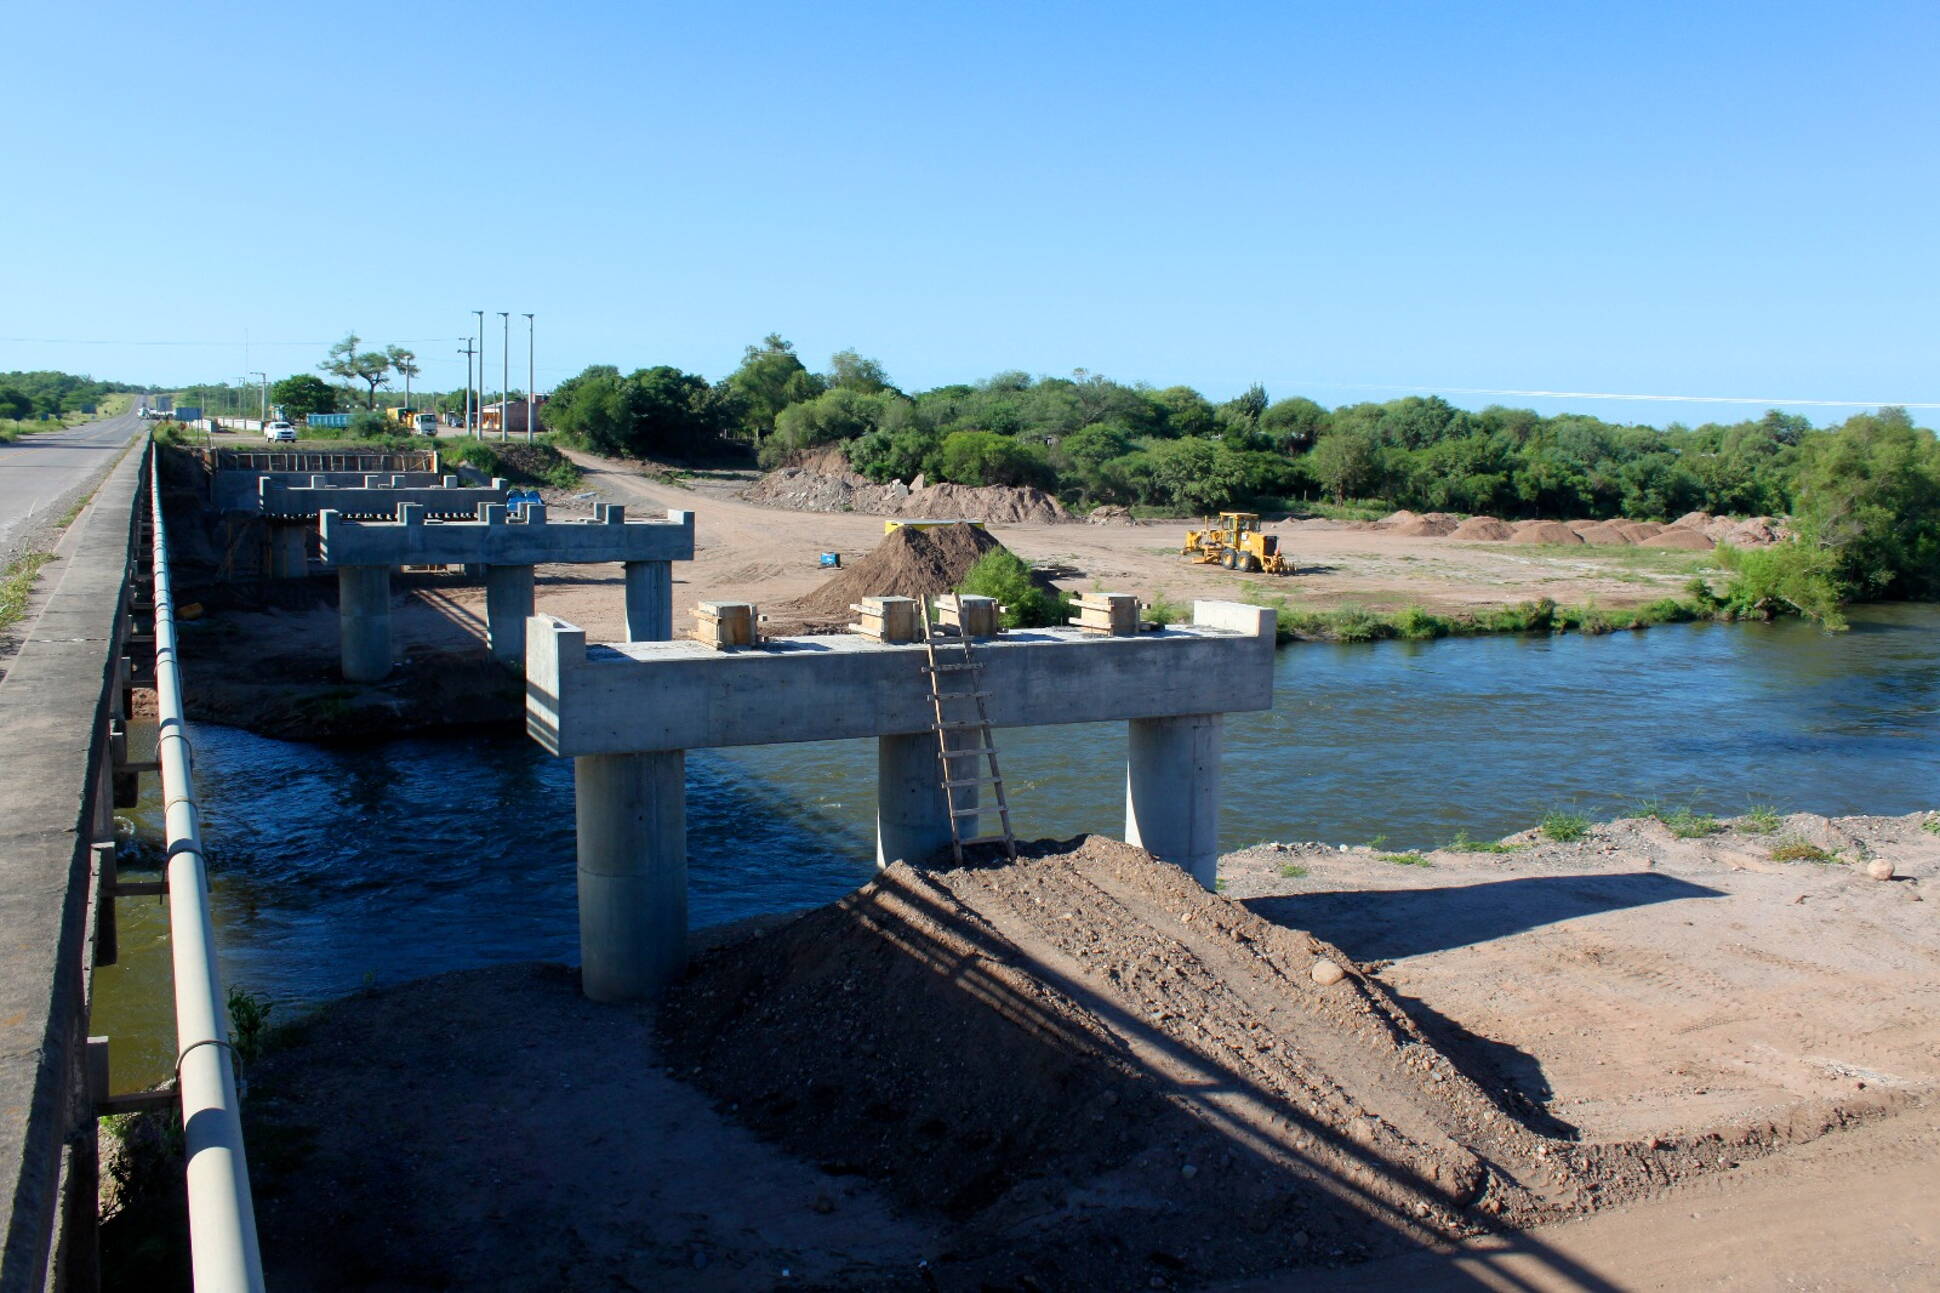 Avanzan las obras en el nuevo puente sobre el río Juramento en Salta